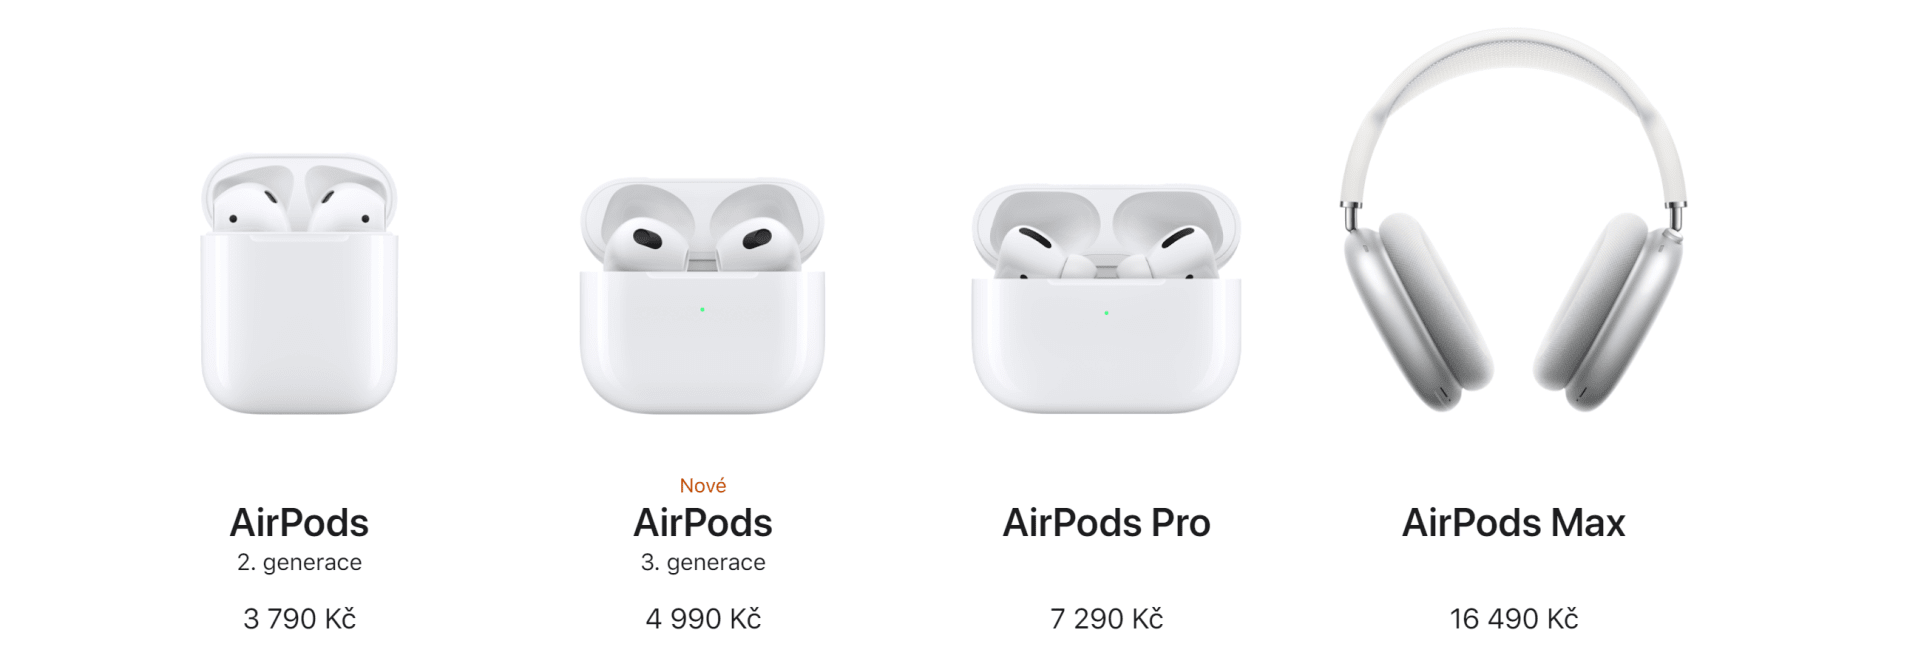 Srovnání všech sluchátek AirPods - ty starší lze však sehnat za nižší než zaváděcí cenu